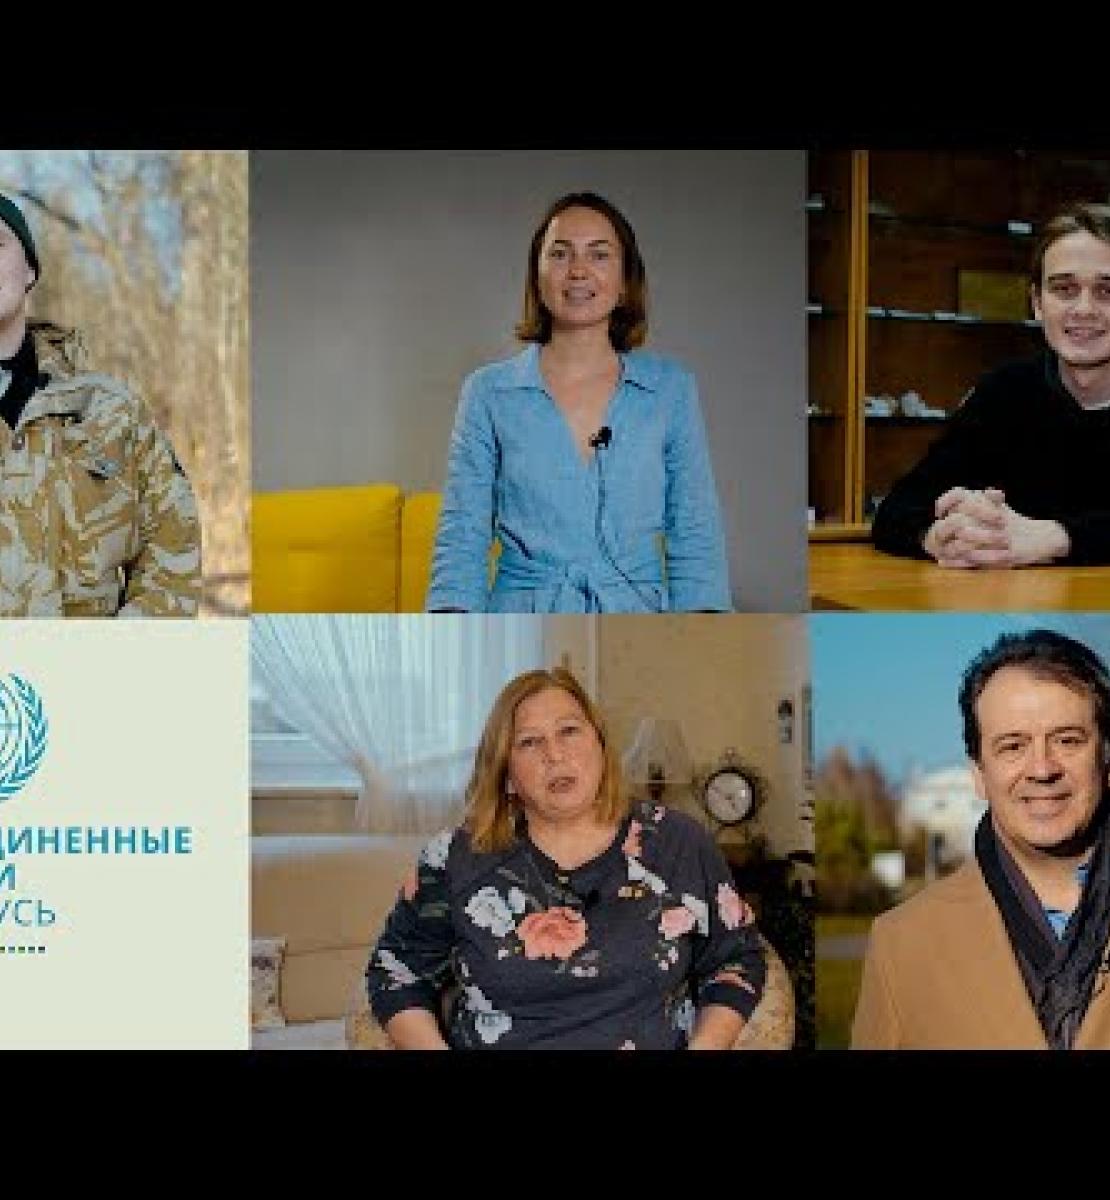 لكل فرد دور يؤديه في التخفيف من آثار تغير المناخ: فيديو من الأمم المتحدة في بيلاروس